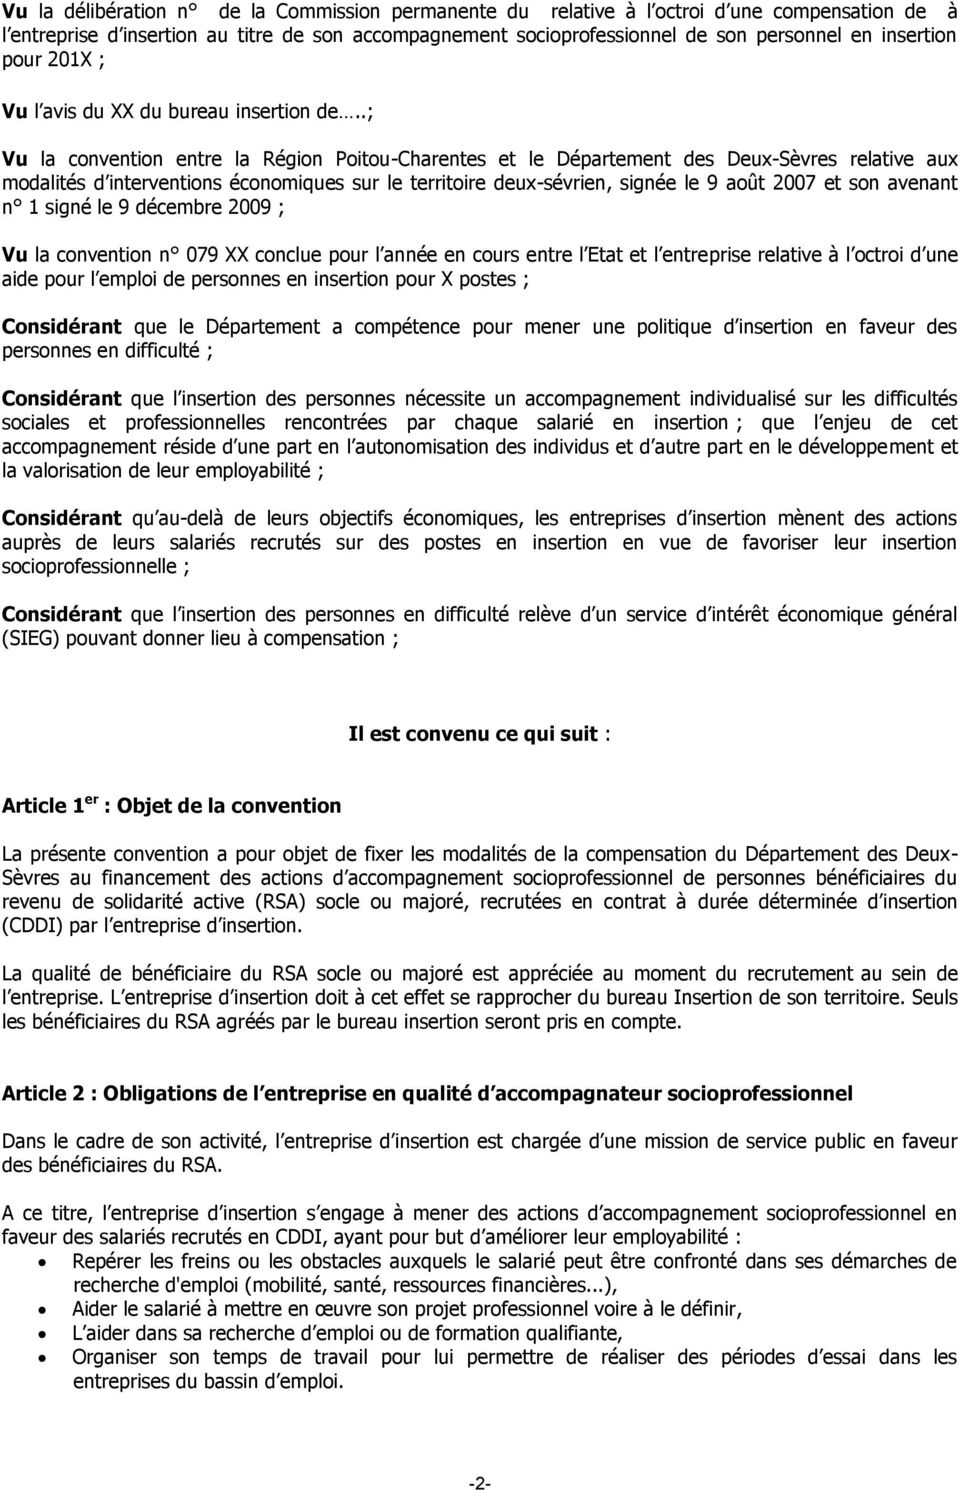 .; Vu la convention entre la Région Poitou-Charentes et le Département des Deux-Sèvres relative aux modalités d interventions économiques sur le territoire deux-sévrien, signée le 9 août 2007 et son